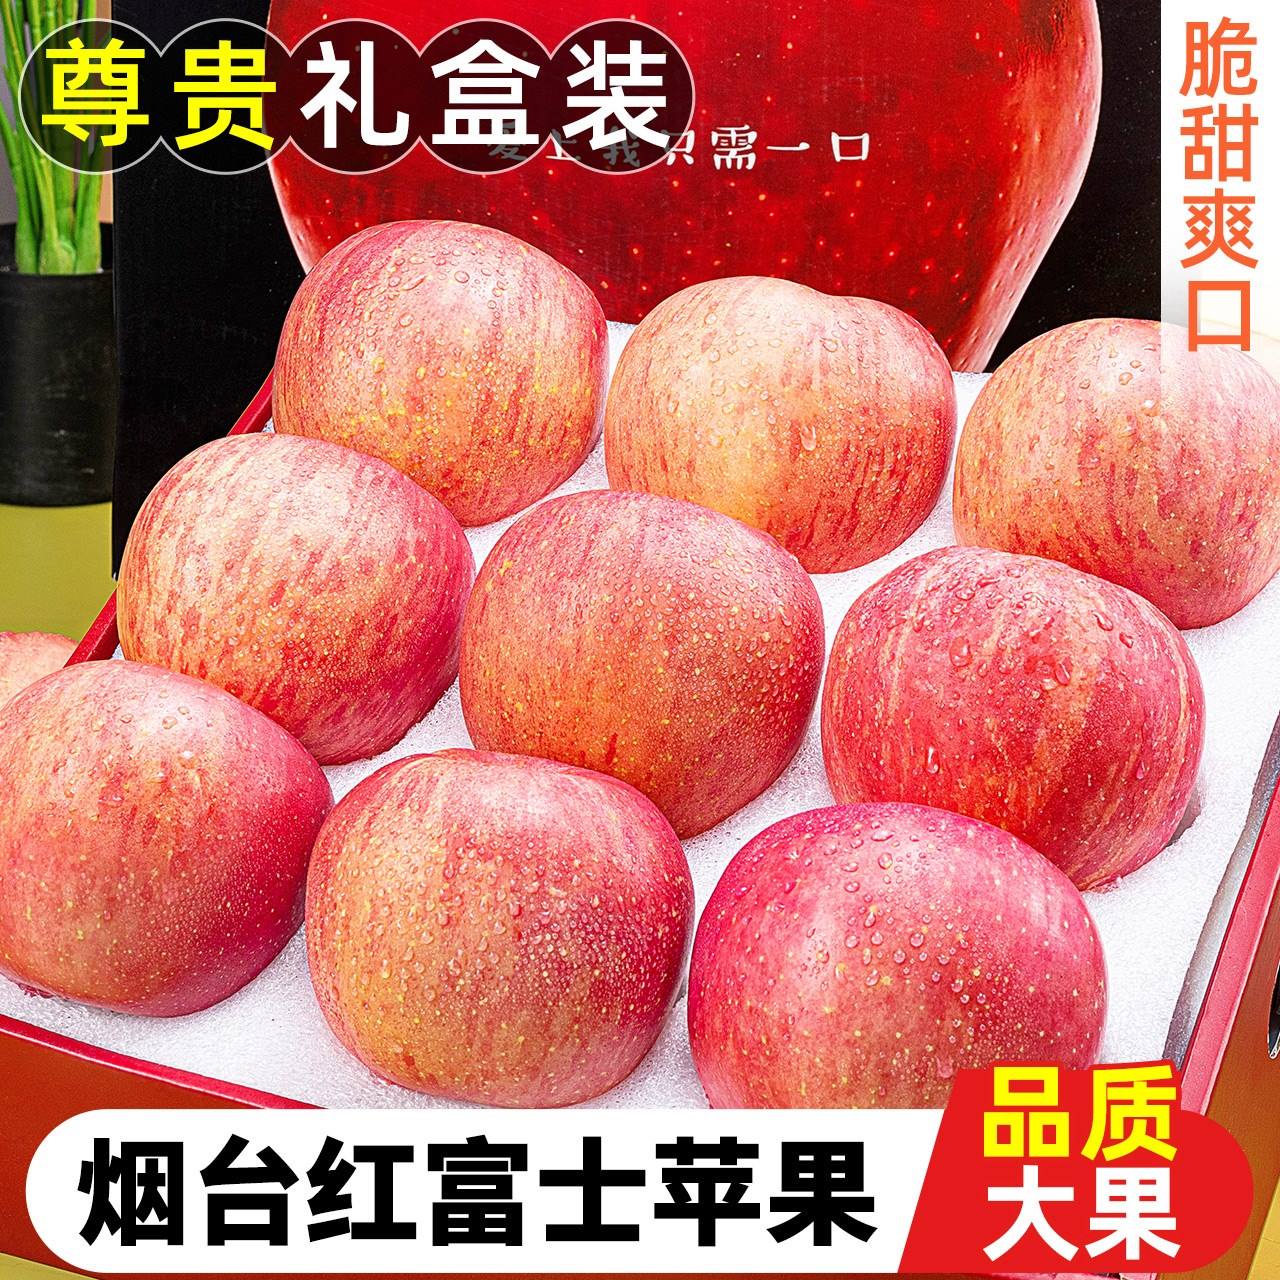 【礼盒】烟台红富士苹果水果装脆甜山东栖霞新鲜当季送平安果